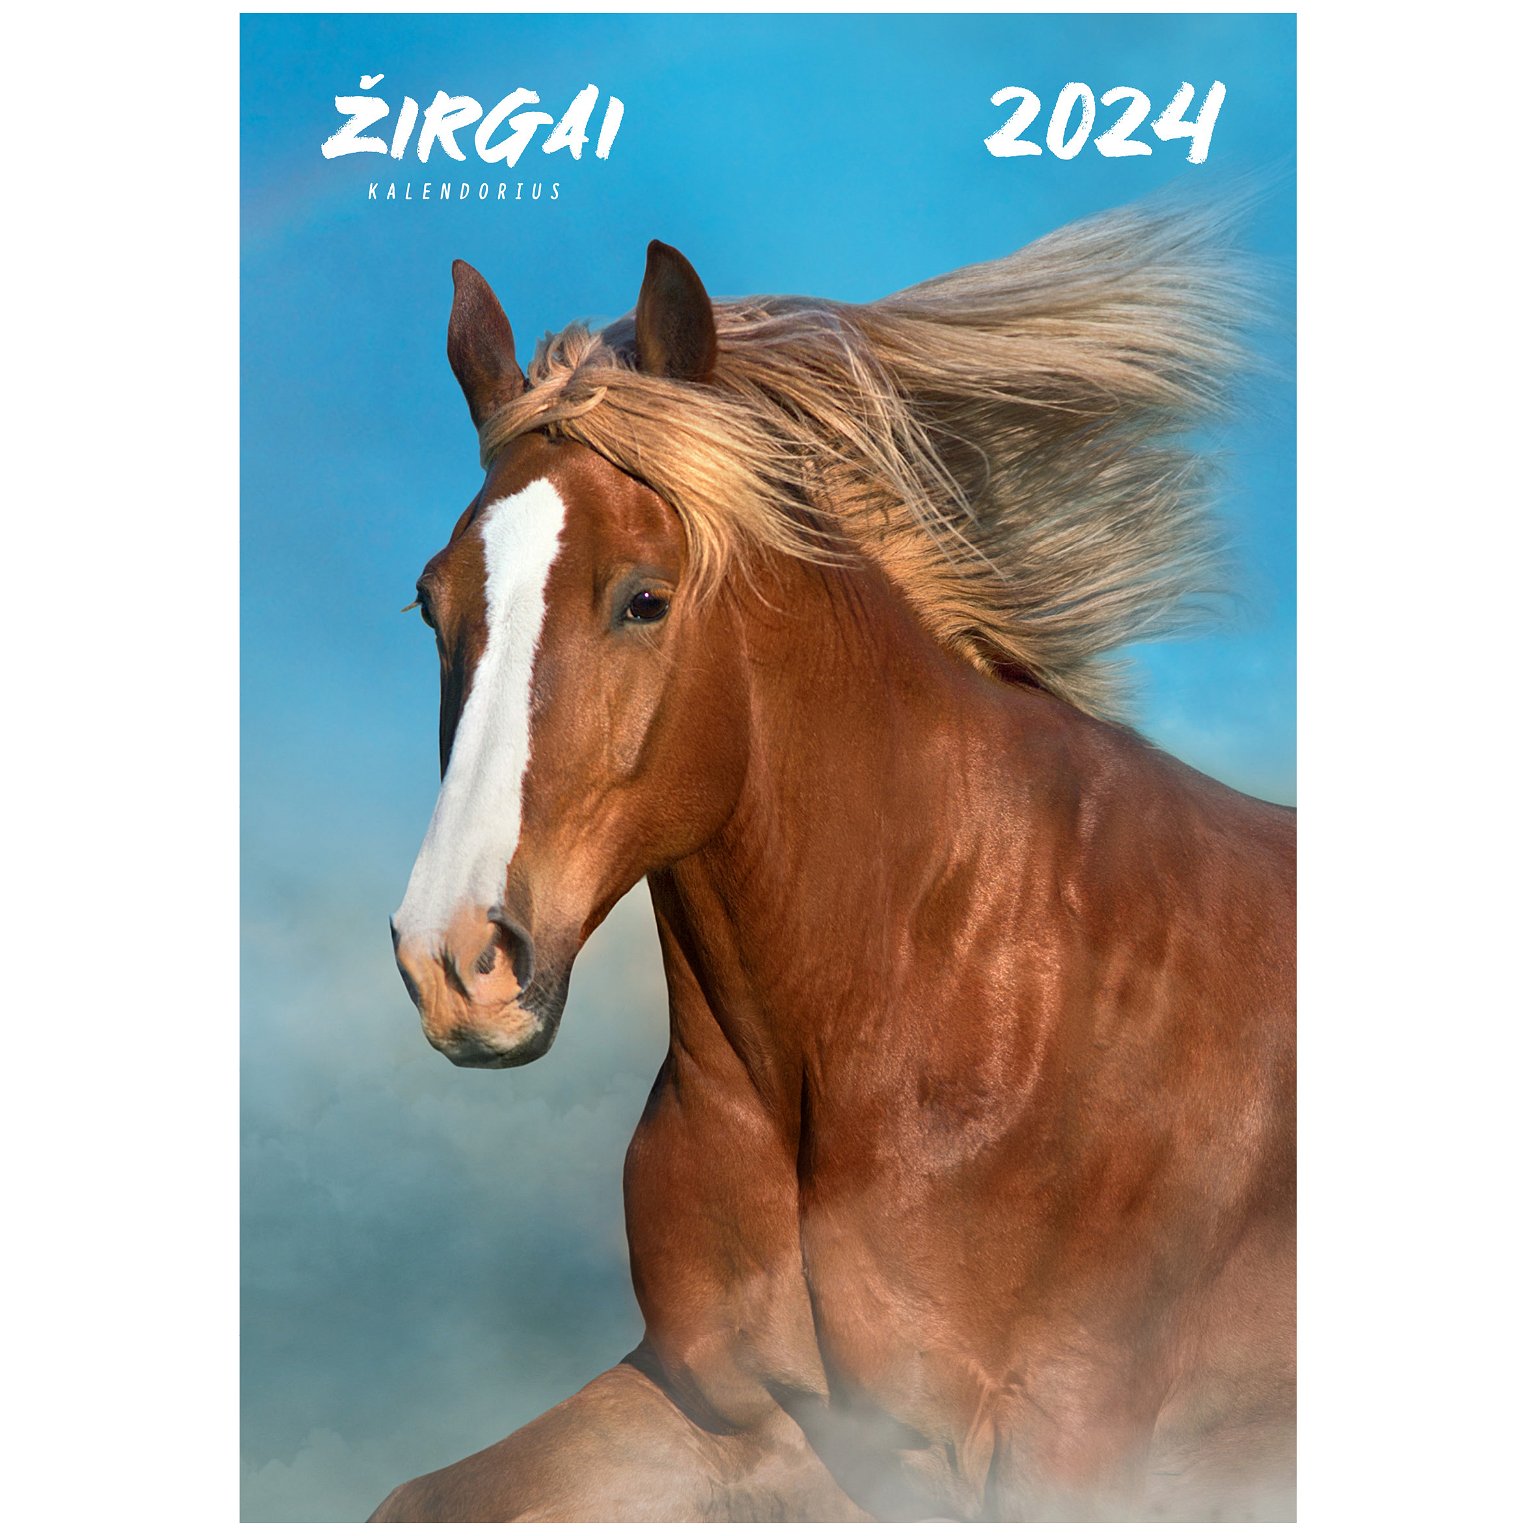 Kalendorius 2024 ŽIRGAI